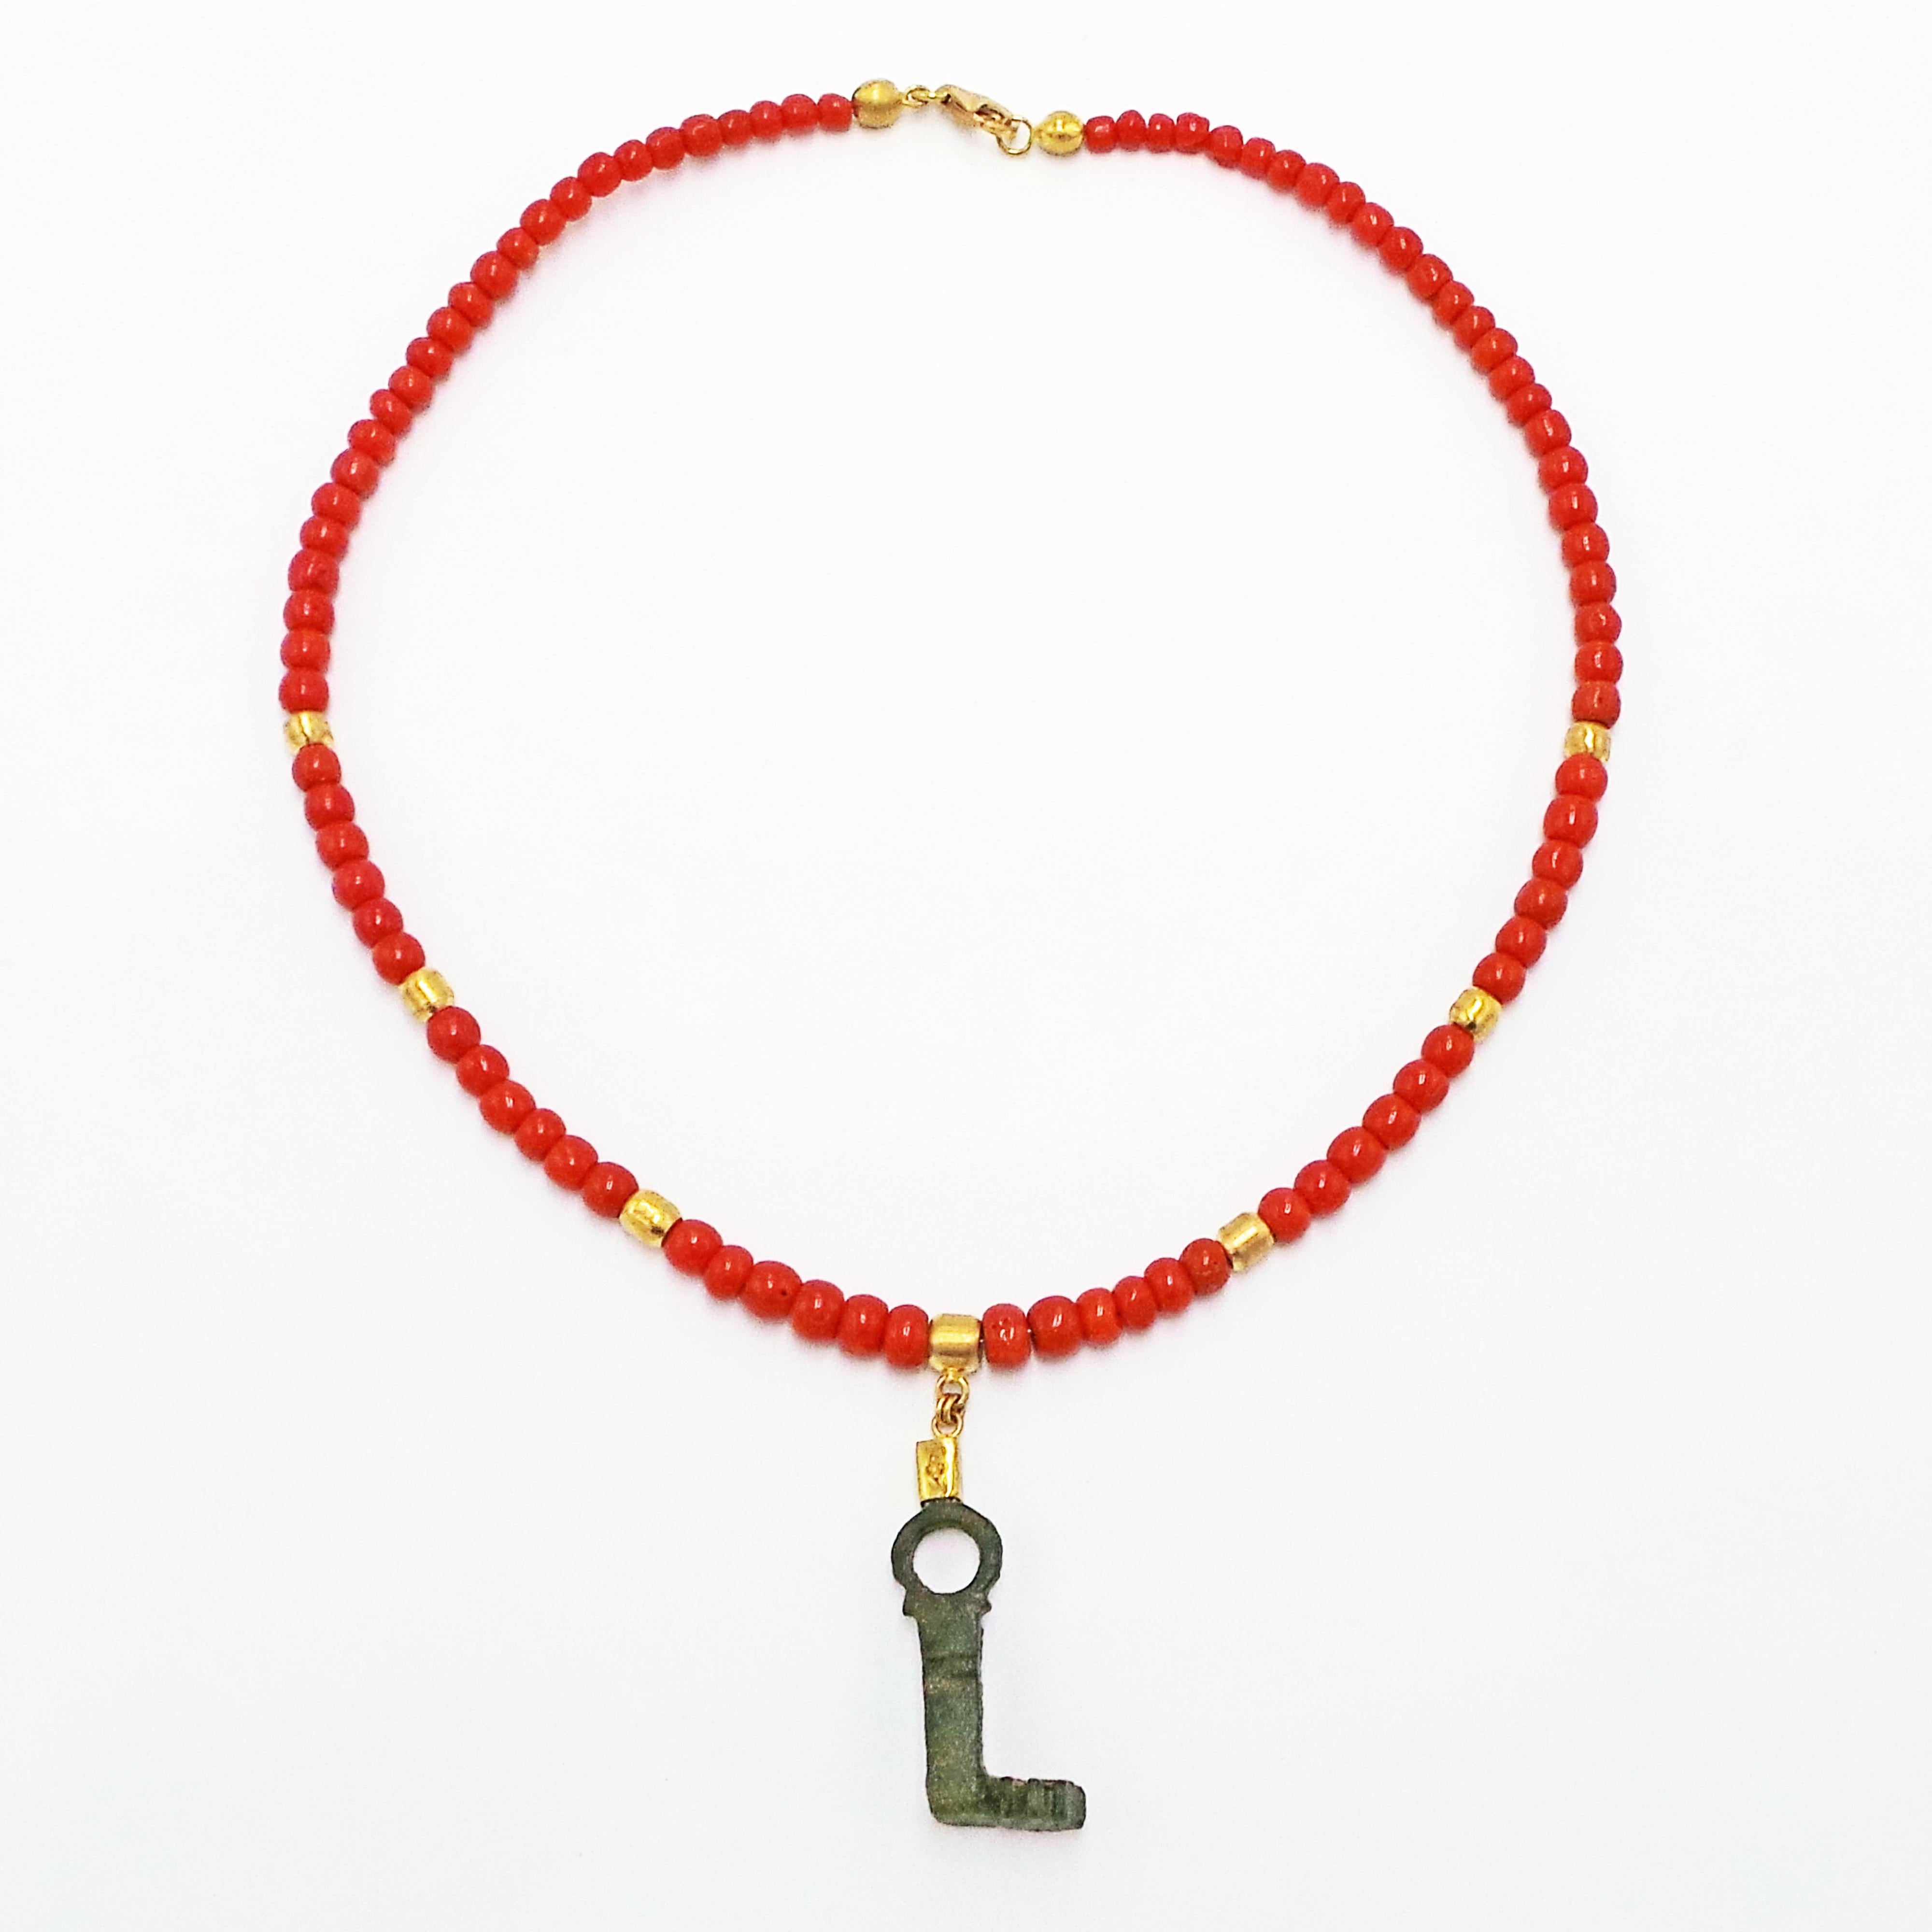 Clé romaine antique en bronze (3e-4e siècle de notre ère) et pendentif en or jaune 22k sur un collier de perles en corail et or jaune 18k.  Le collier mesure 17 pouces de long et se termine par un fermoir à homard en or 18k. Ce collier unique en son